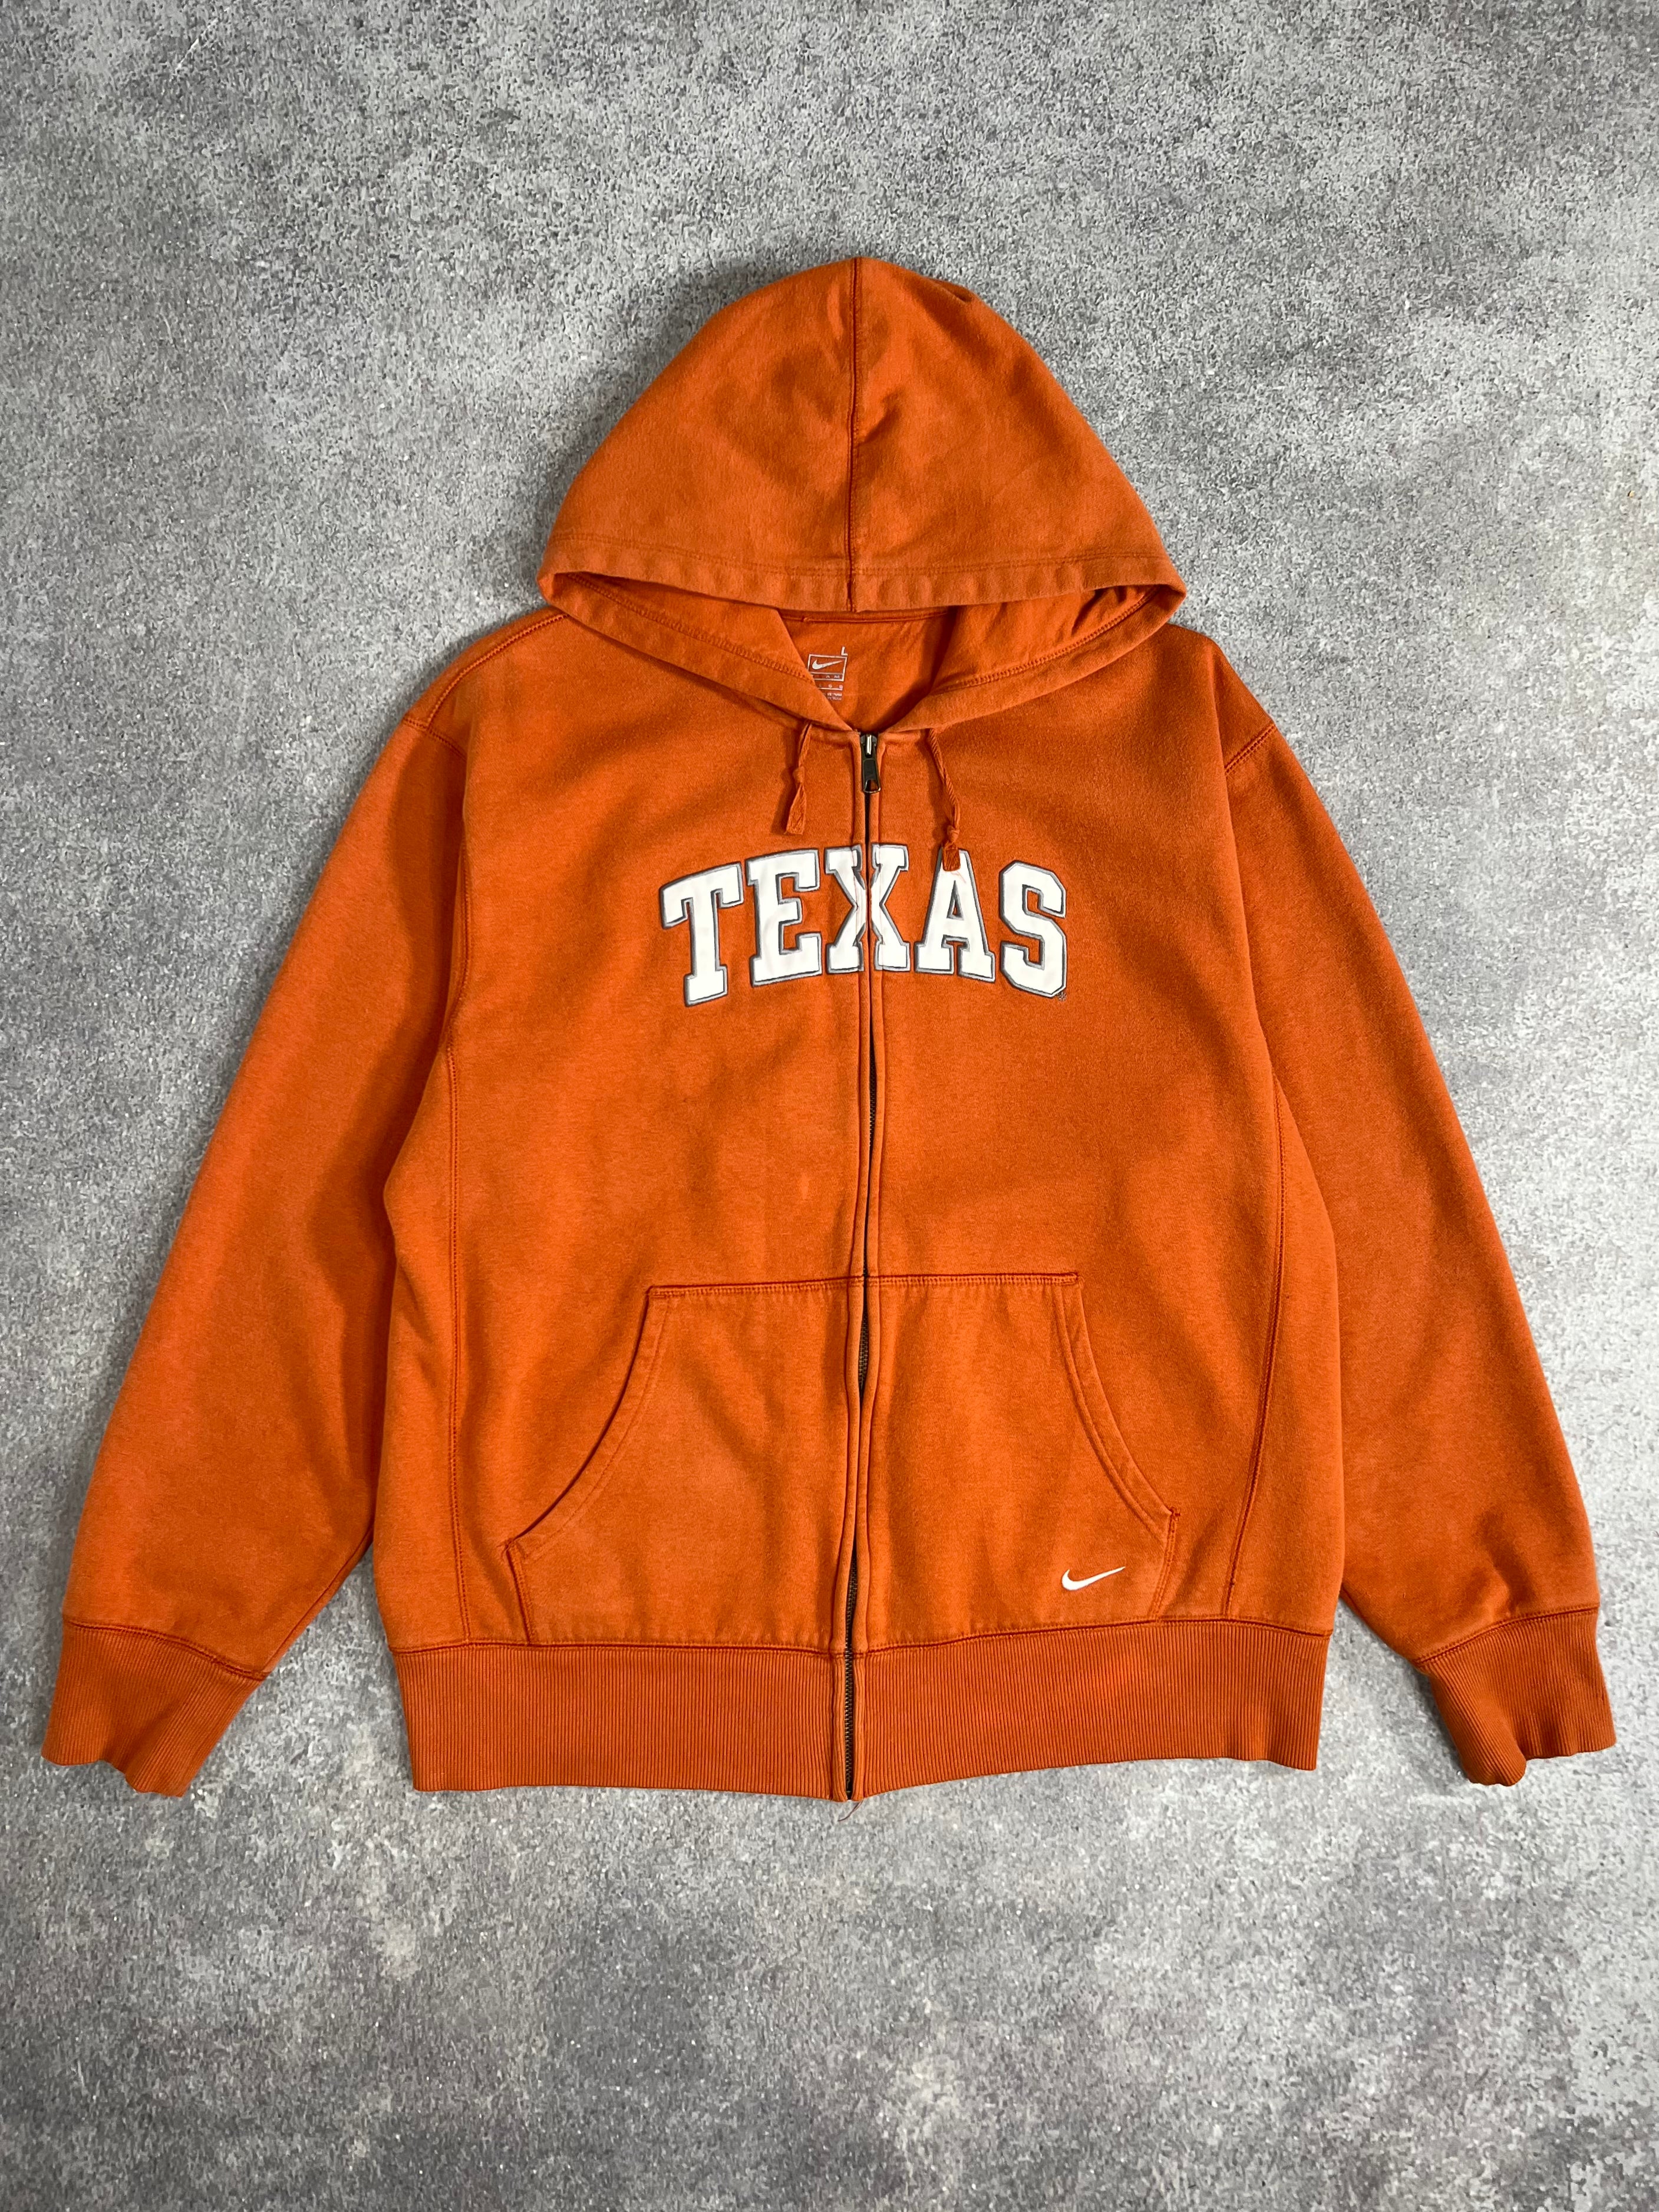 Vintage Nike Texas Zip Hoodie Orange // Medium - RHAGHOUSE VINTAGE